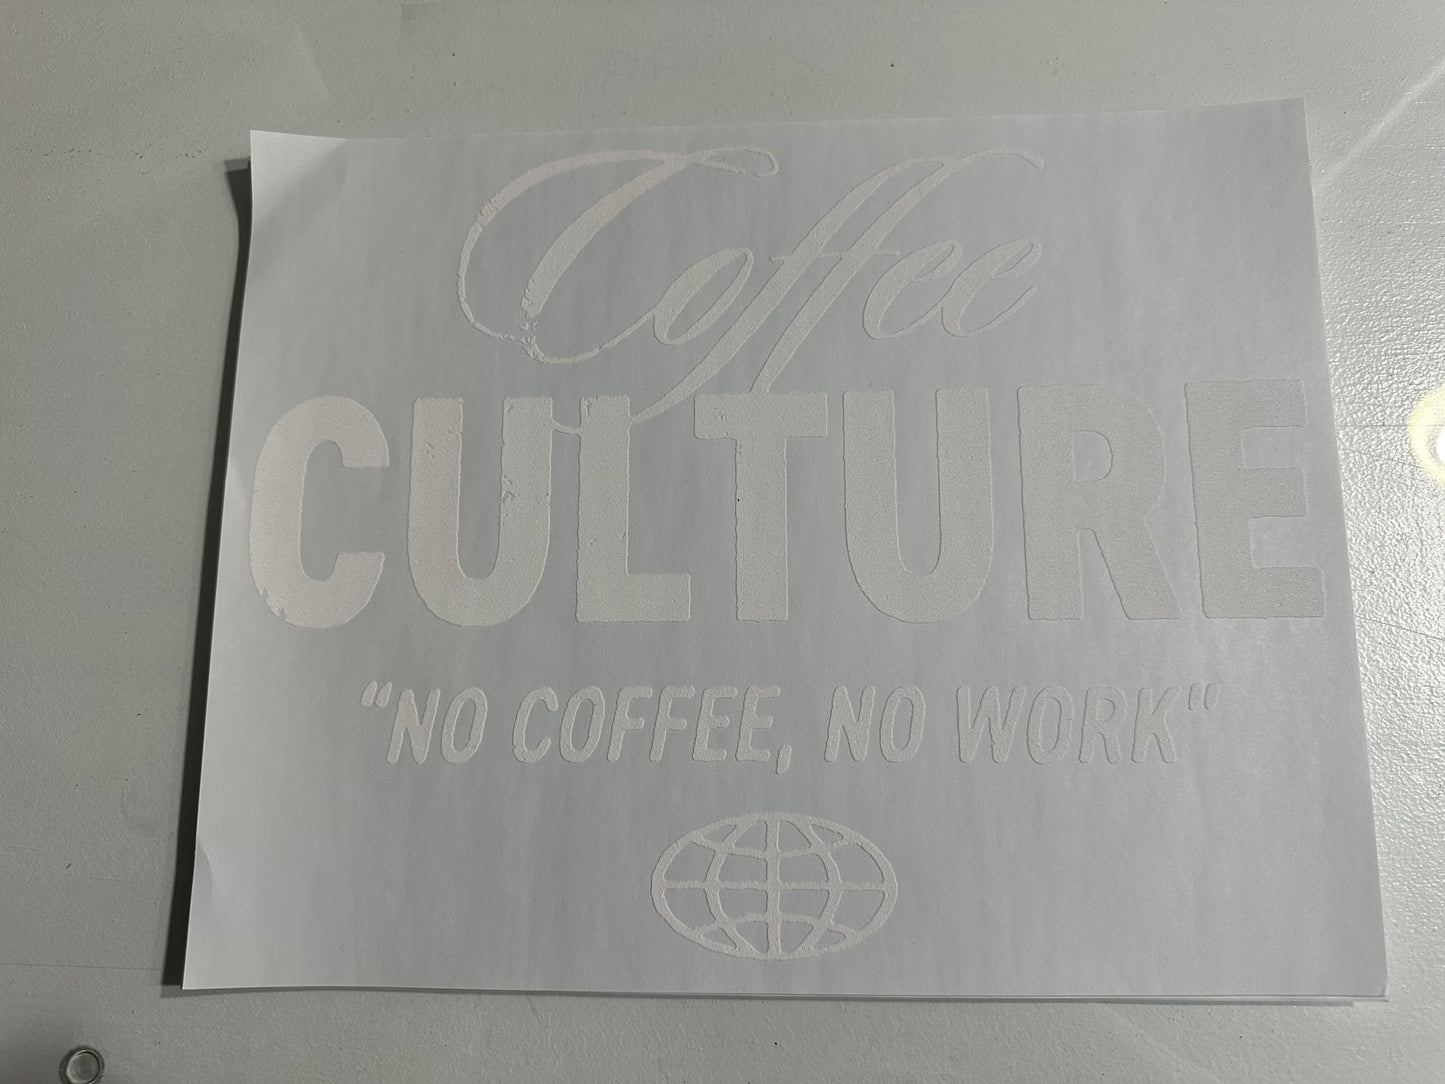 Coffee Culture White